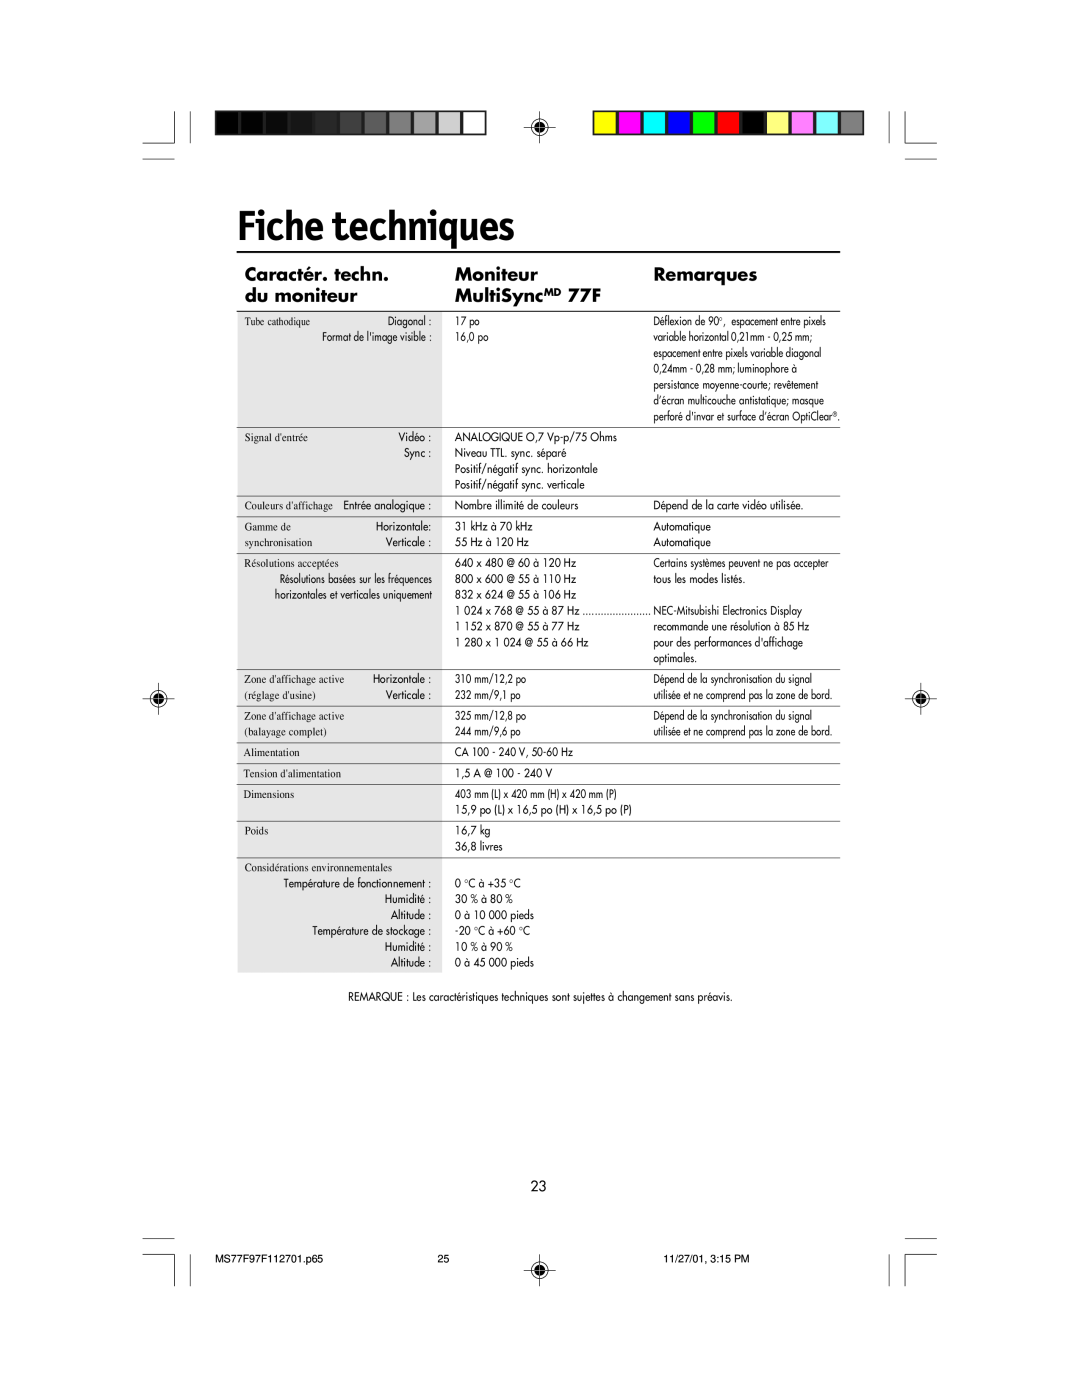 NEC 97F manual Fiche techniques, Caractér. techn, Moniteur, Remarques, du moniteur, MultiSyncMD 77F 